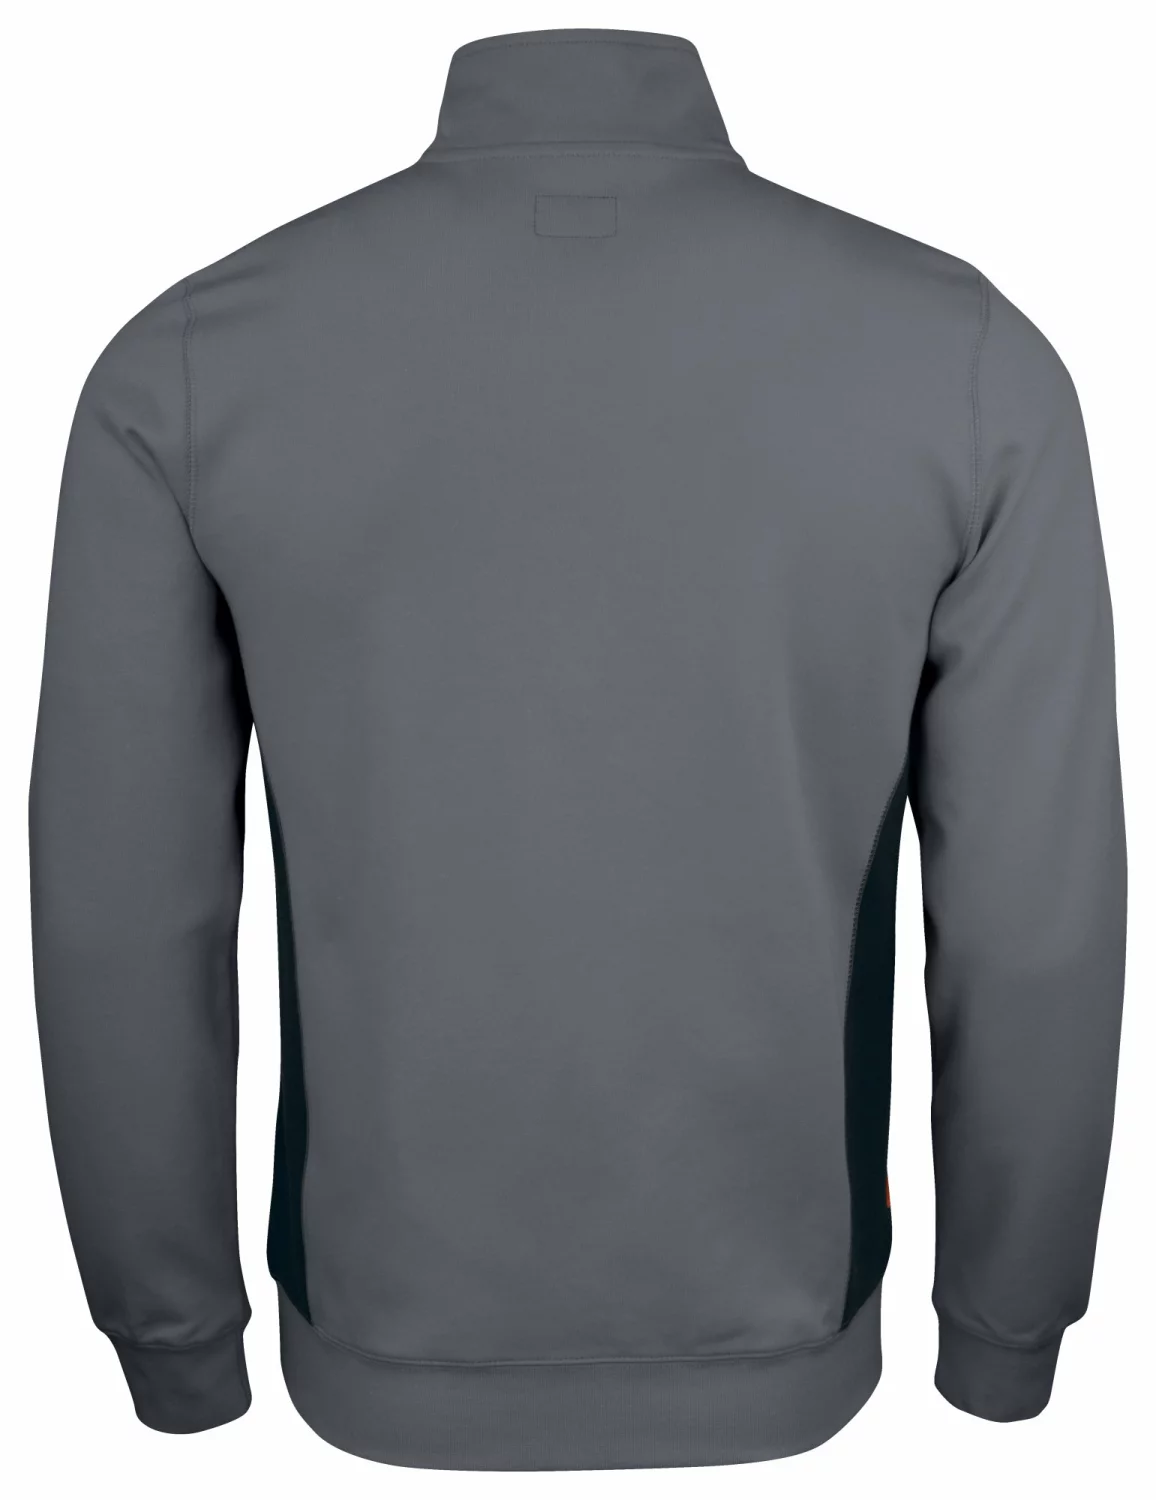 Jobman 5401 Sweatshirt met rits - Maat M - Grijs/Zwart